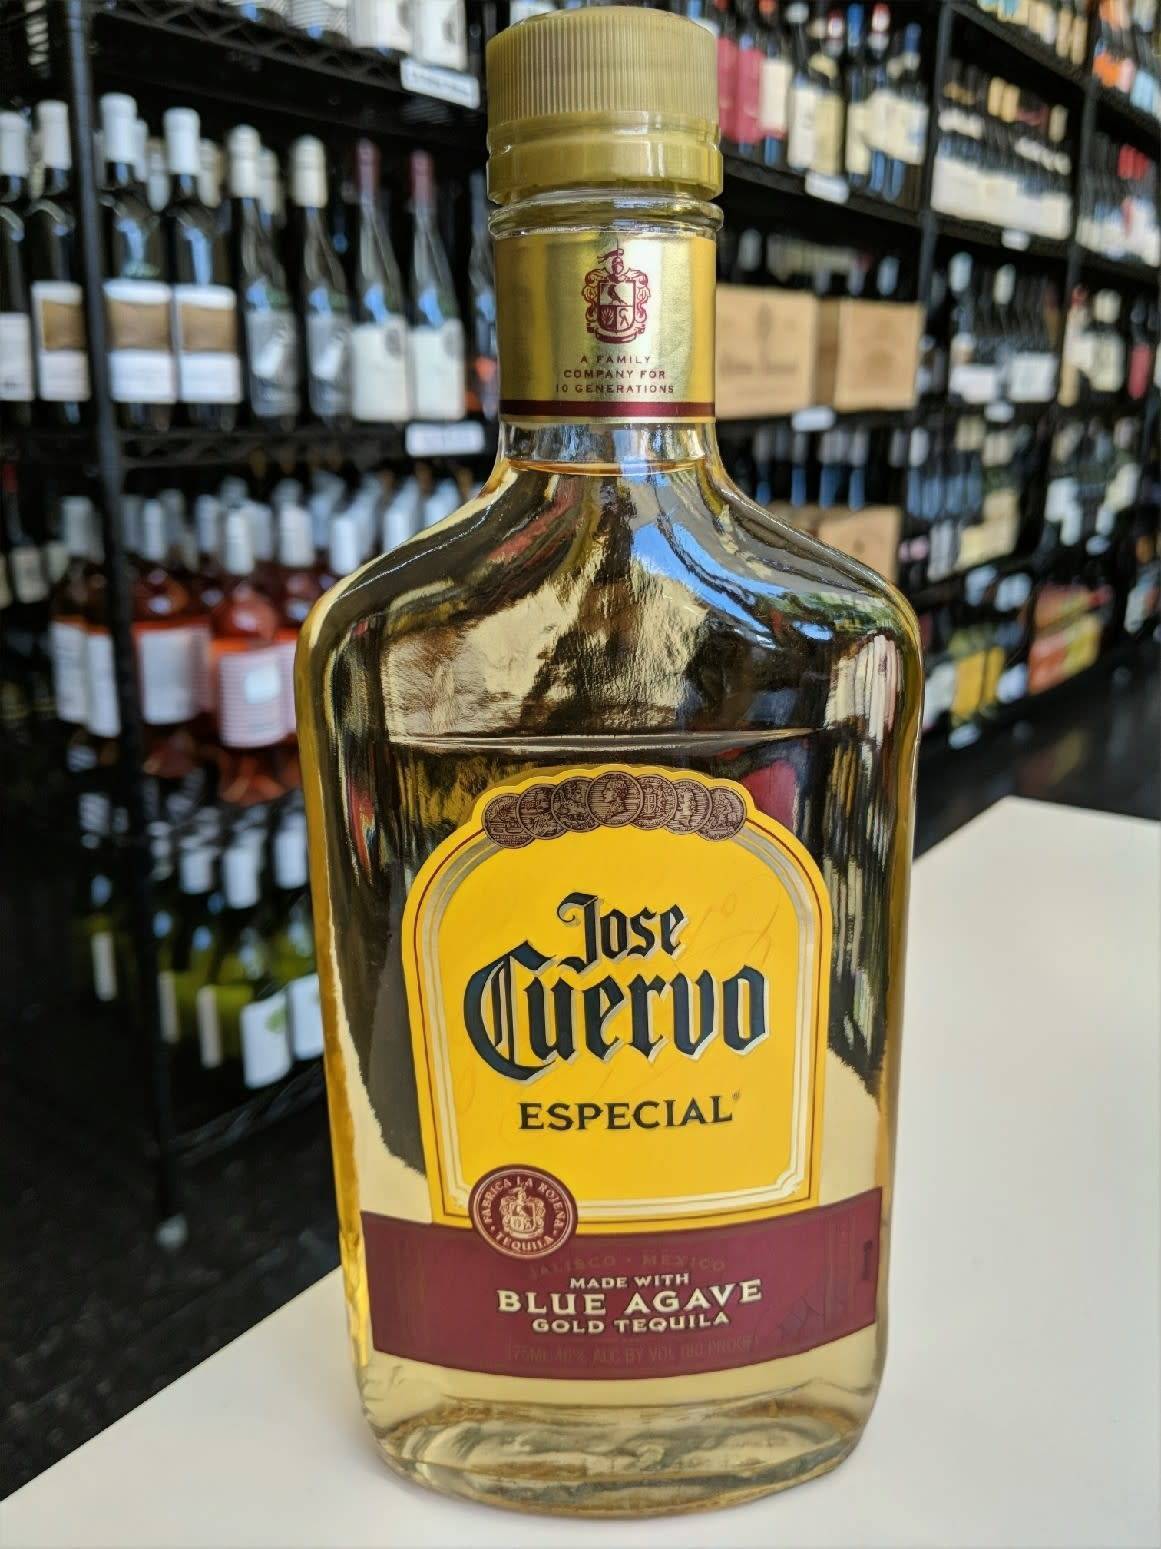 Текила jose cuervo (хосе куэрво). цена, сколько стоит, где купить especial reposado, silver, platino, gold